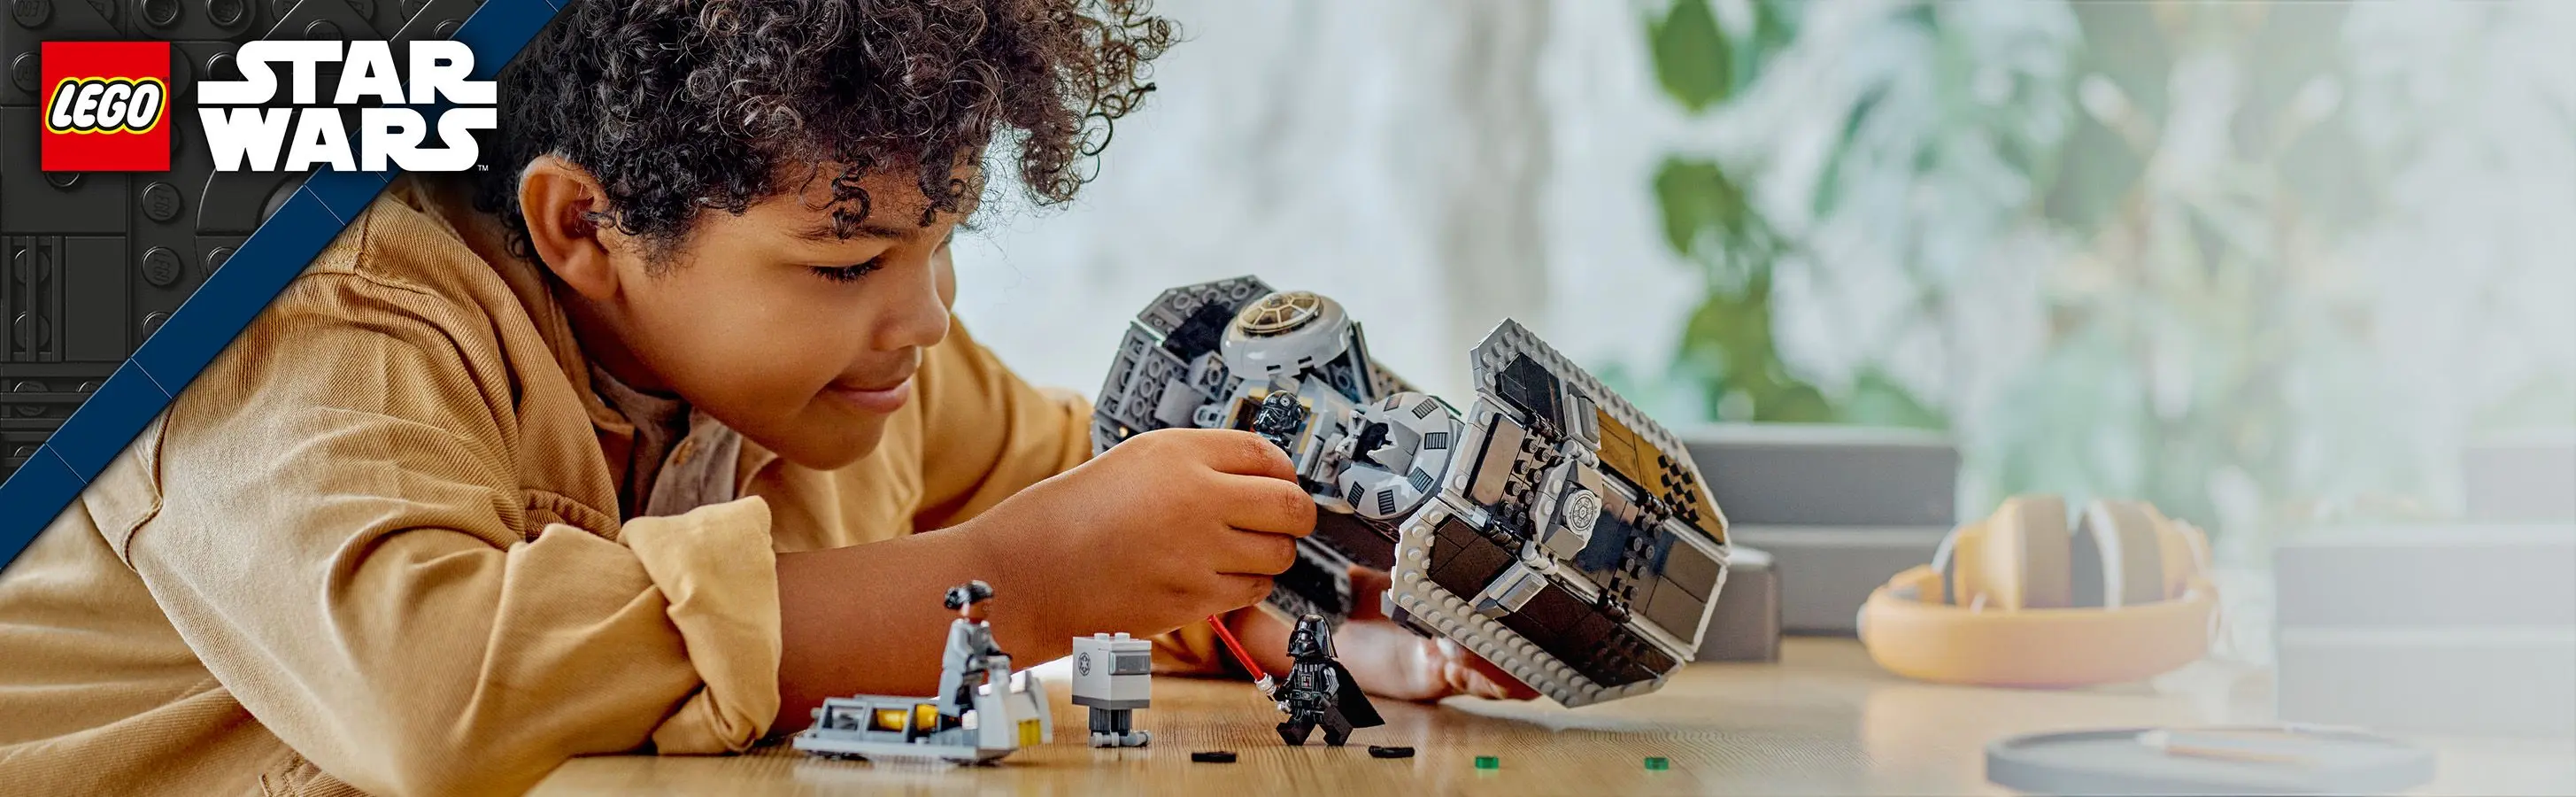 LEGO Star Wars hoofdafbeelding